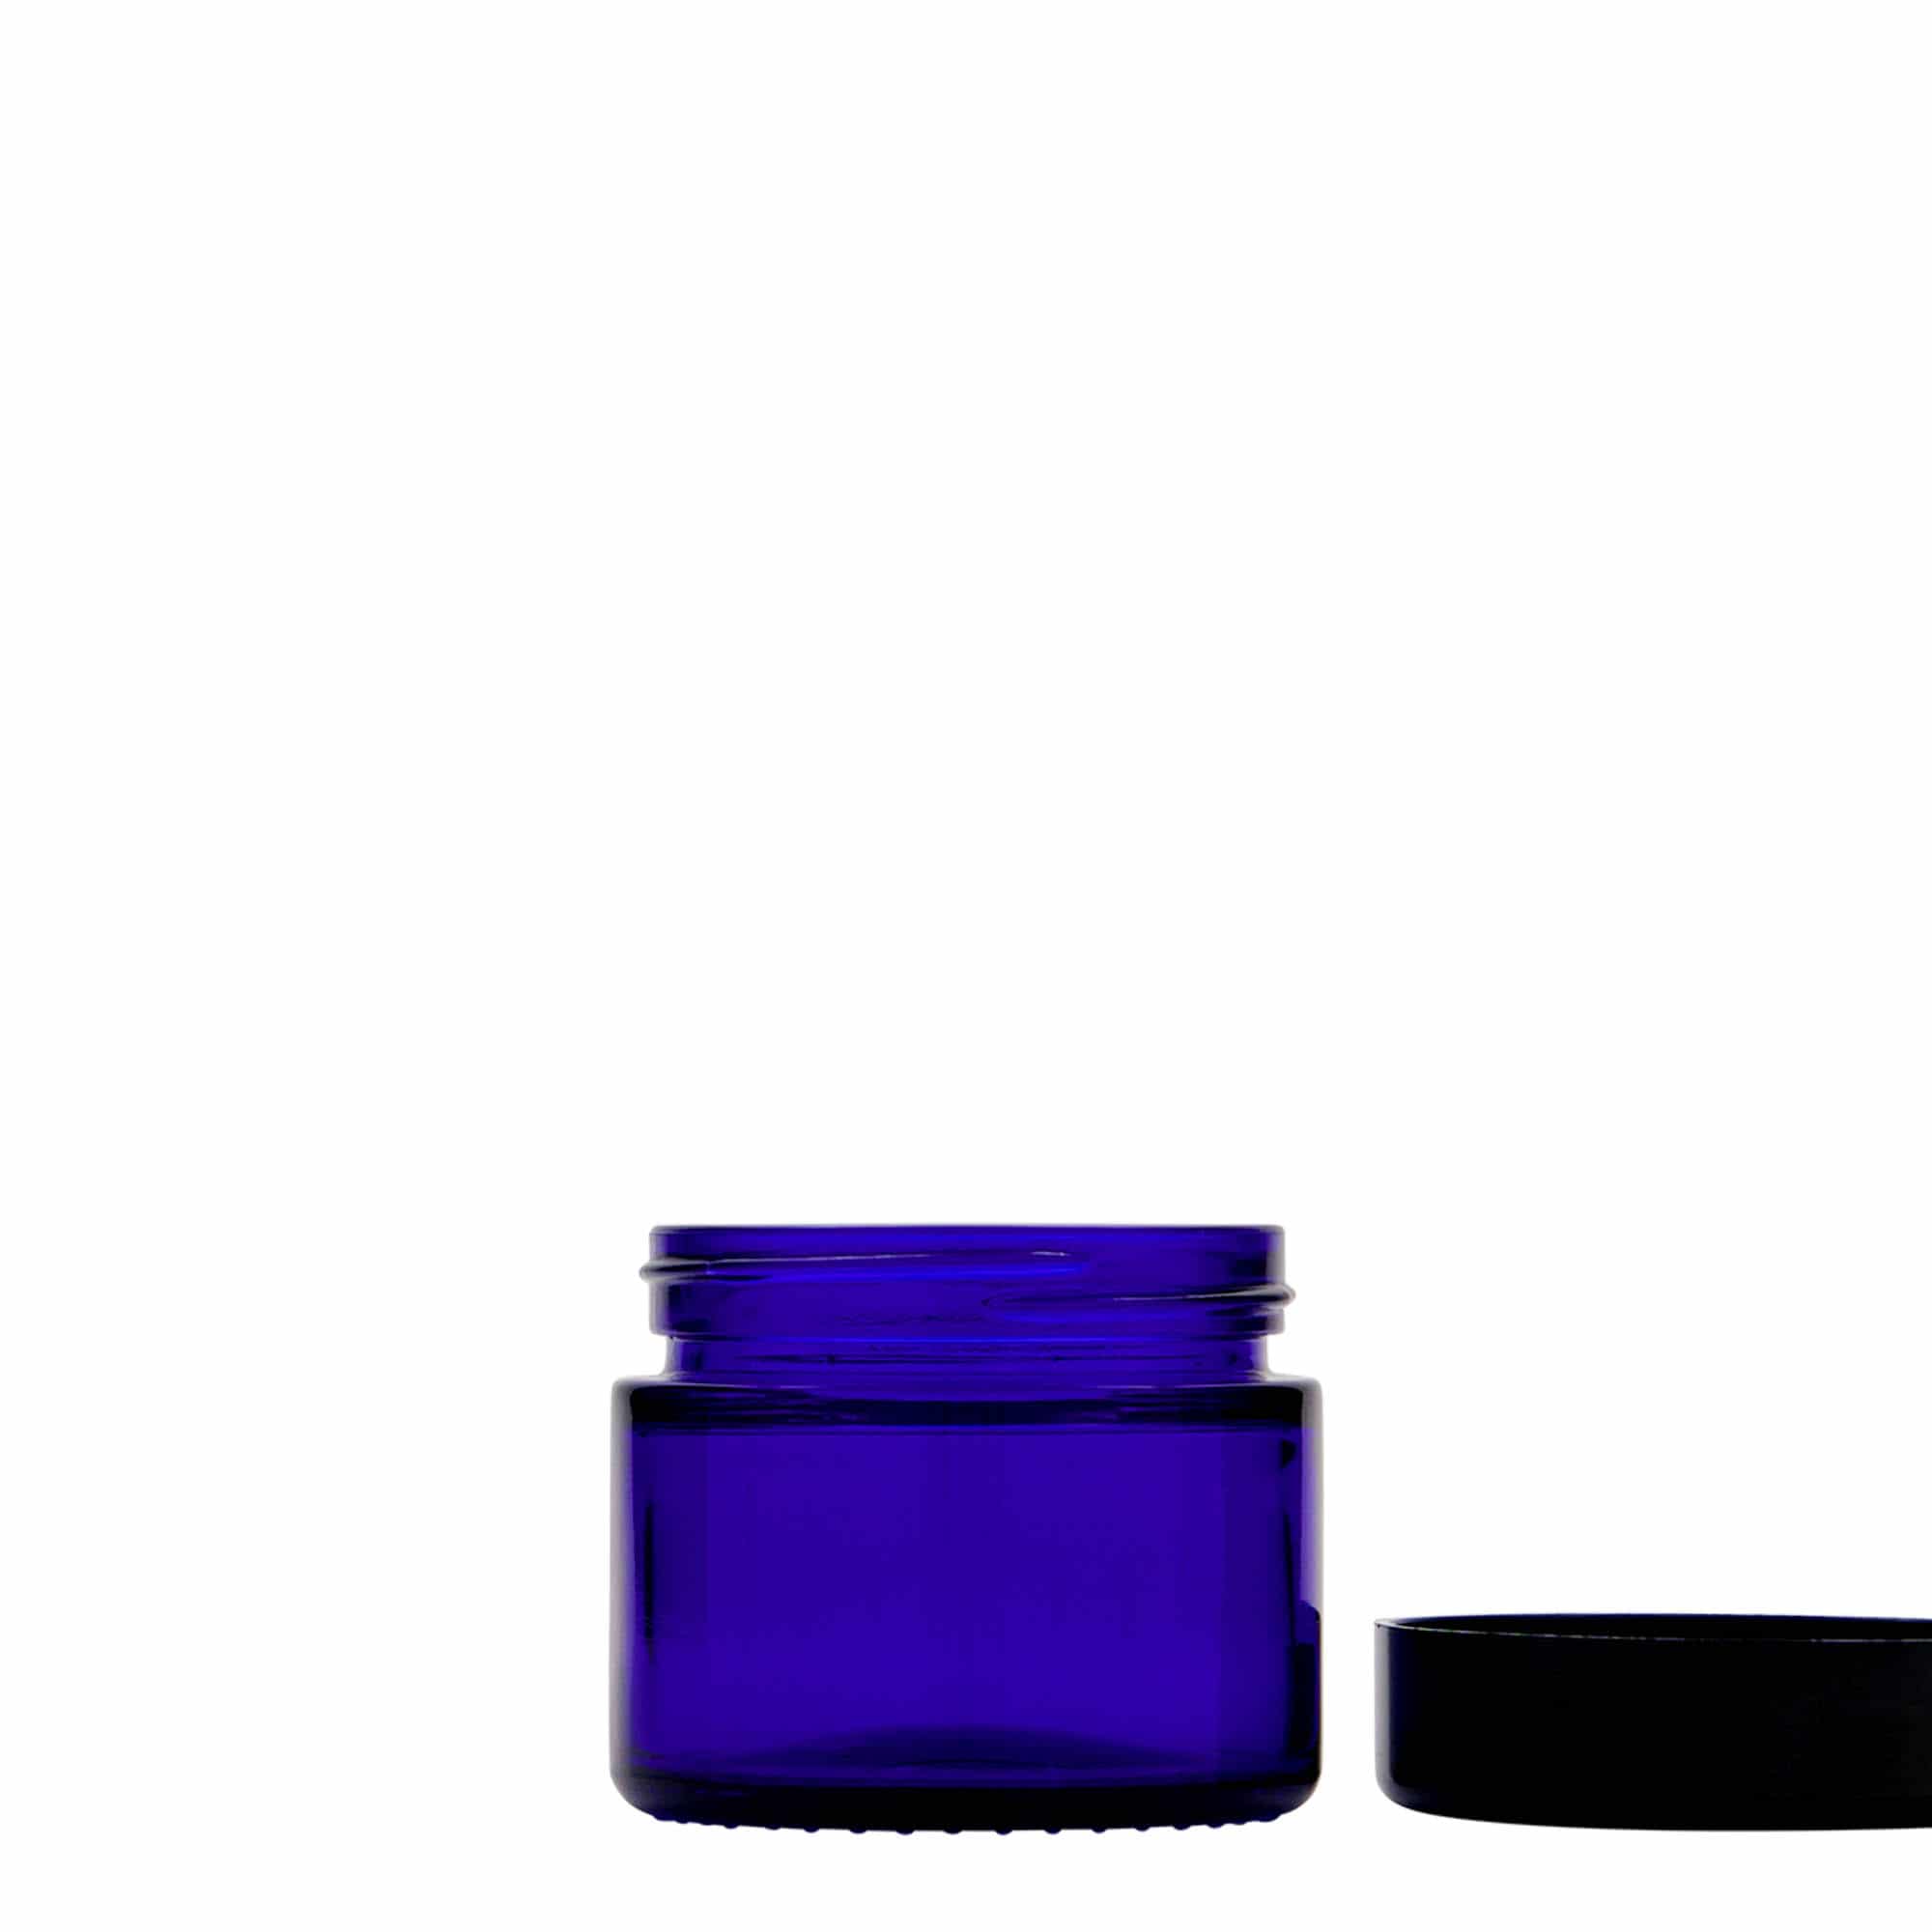 50 ml pojemnik na kosmetyki 'Blue Edition', szkło, kolor błękit królewski, zamknięcie: zakrętka